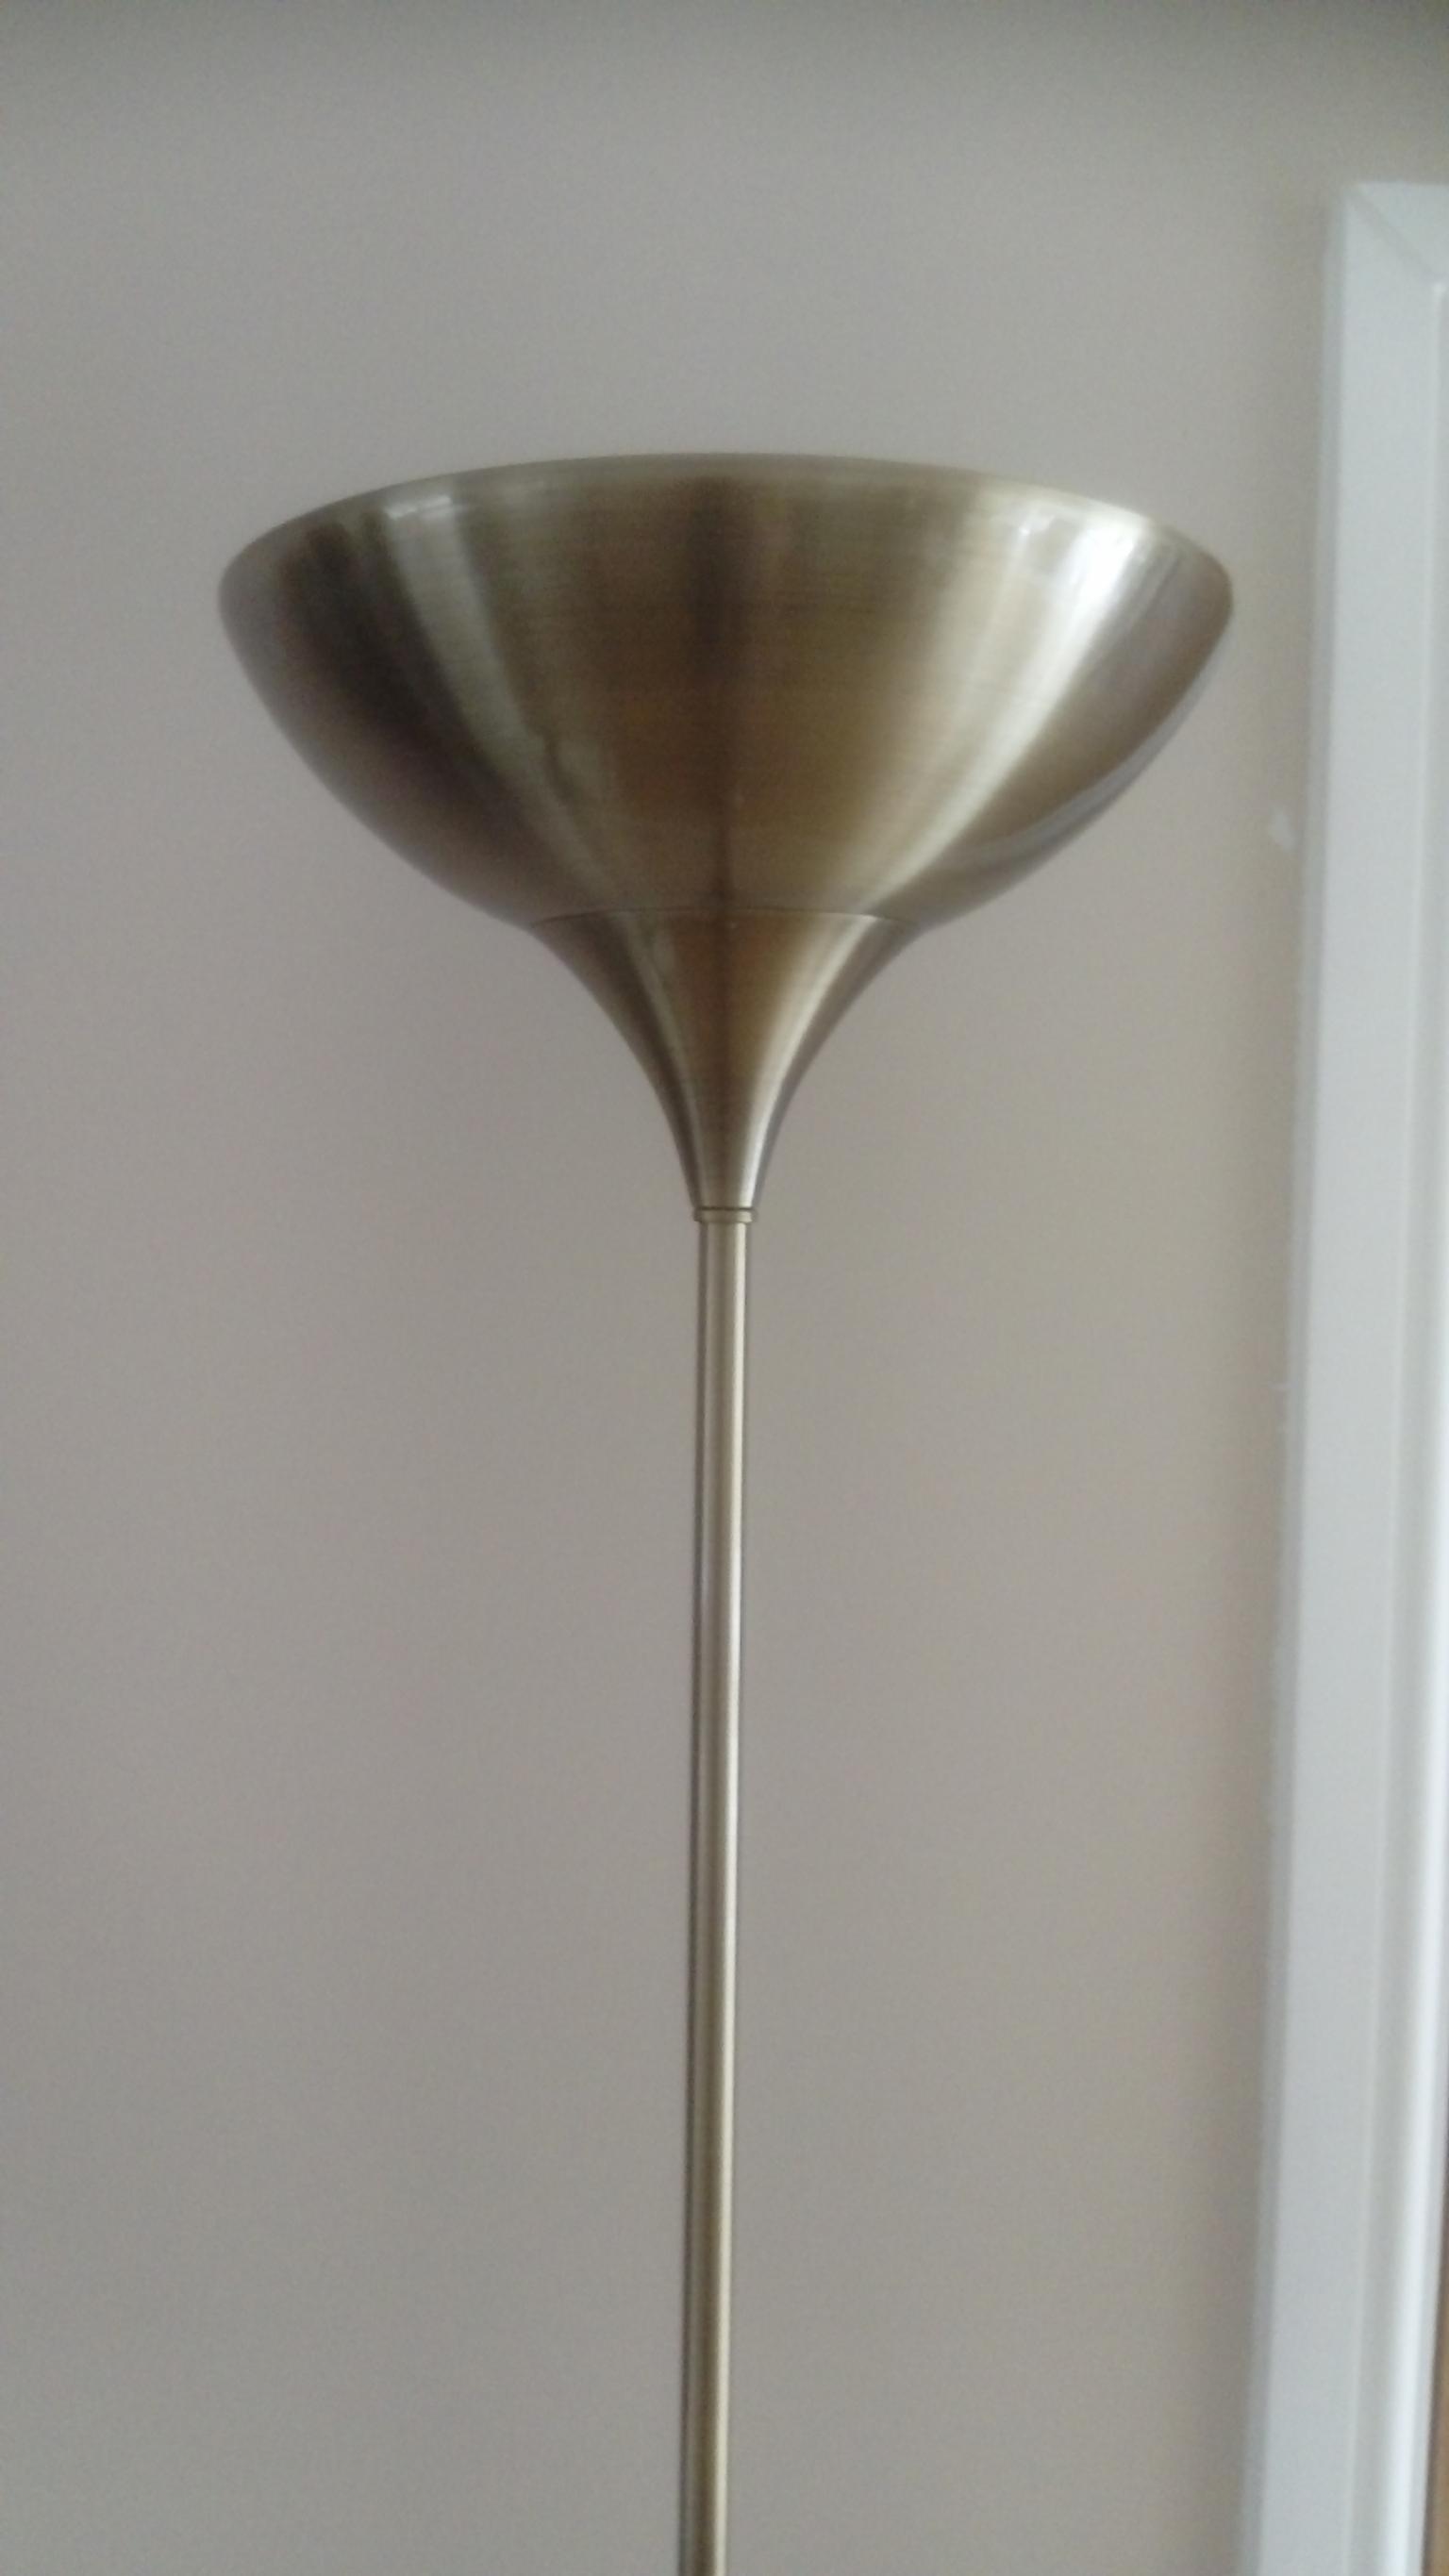 Antique Brass Uplighter Floor Lamp In Rg24 Deane For 15 00 For